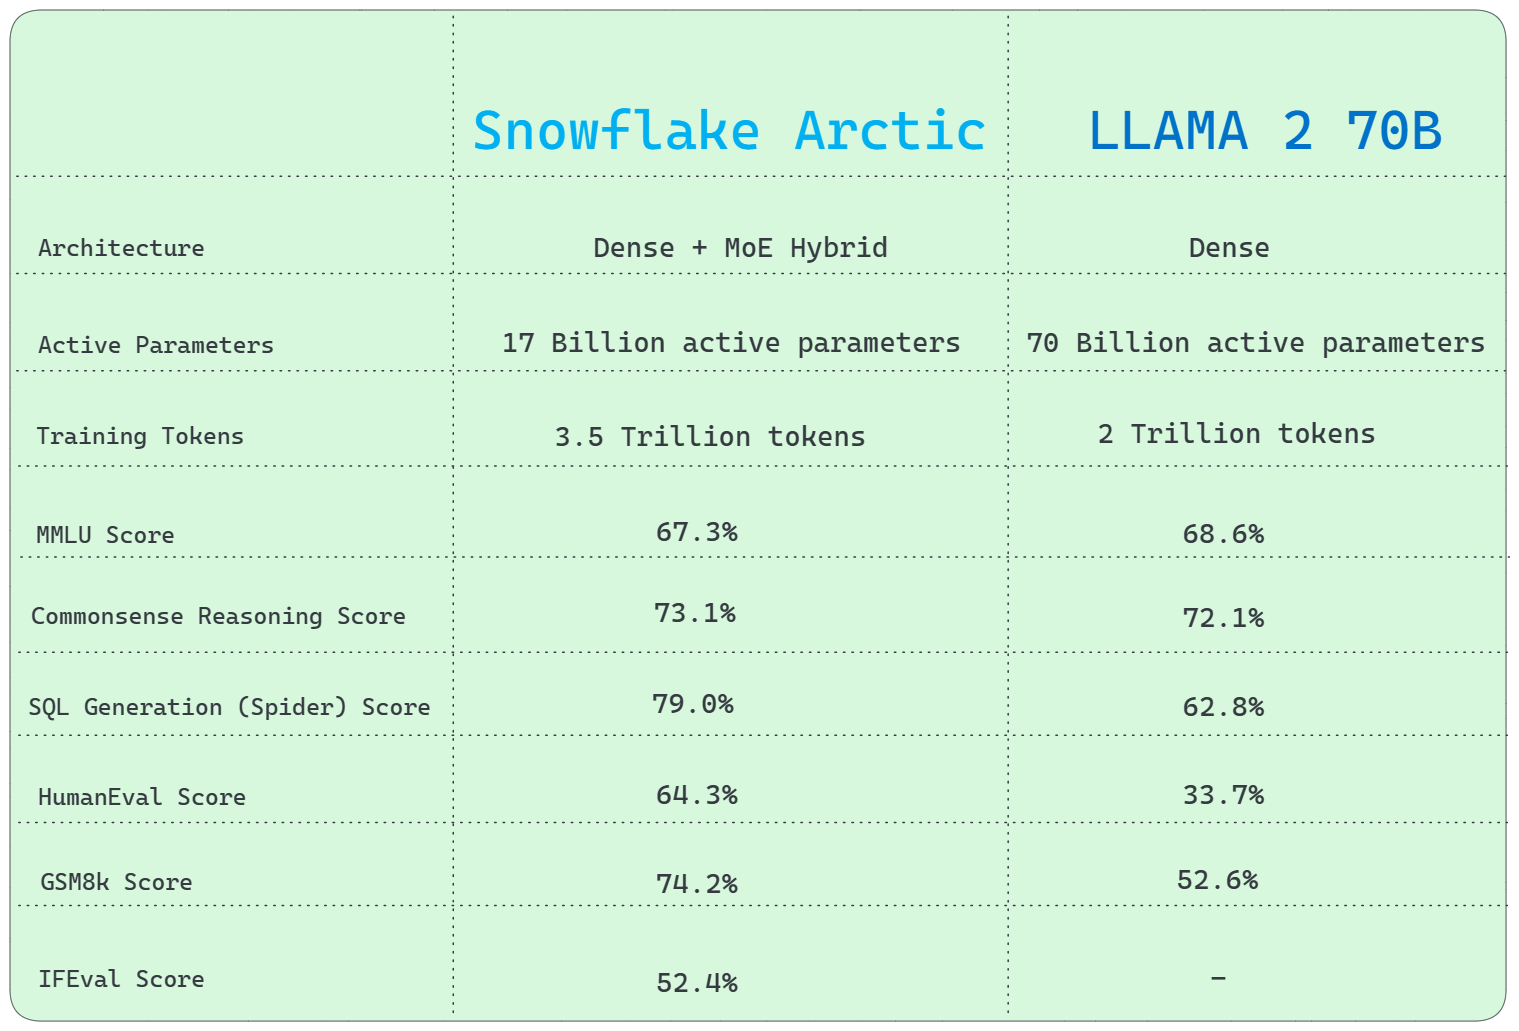 Snowflake Arctic vs. Llama 2 70B